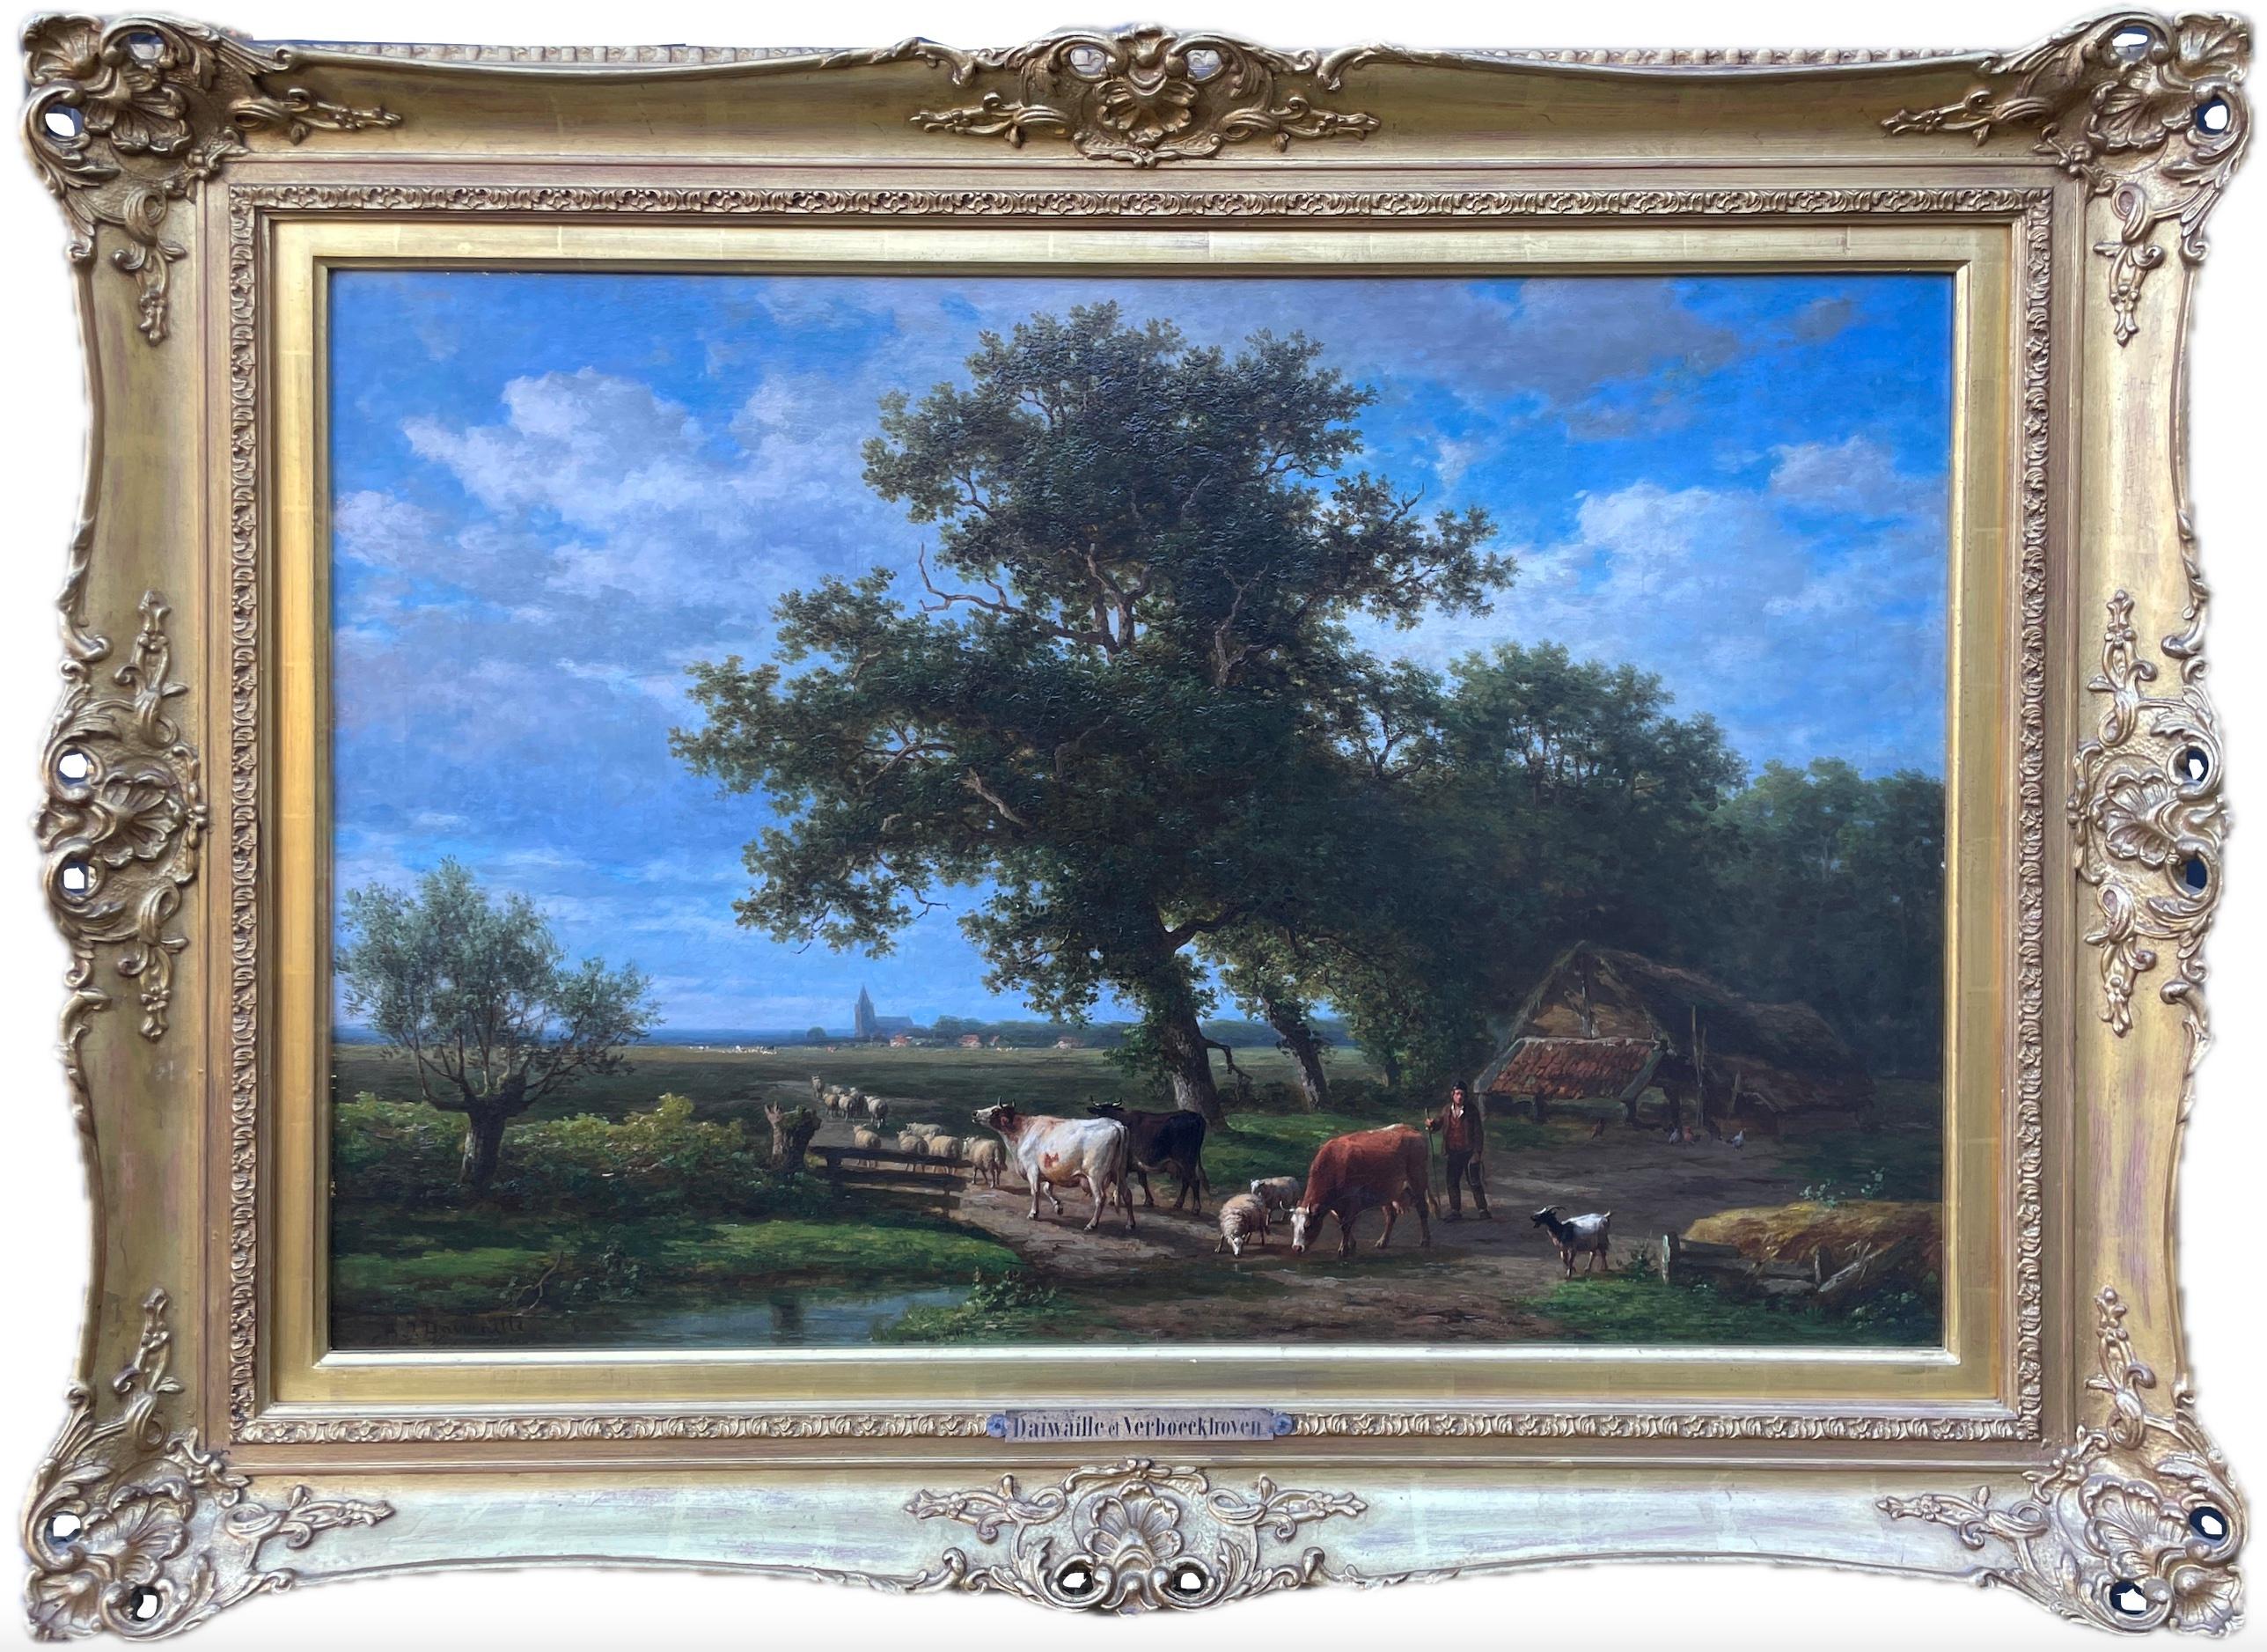 Huile sur toile d'Eugene Verboeckhoven & Alexander Daiwaille (1796-1881) - Réalisme Painting par Eugène Verboeckhoven